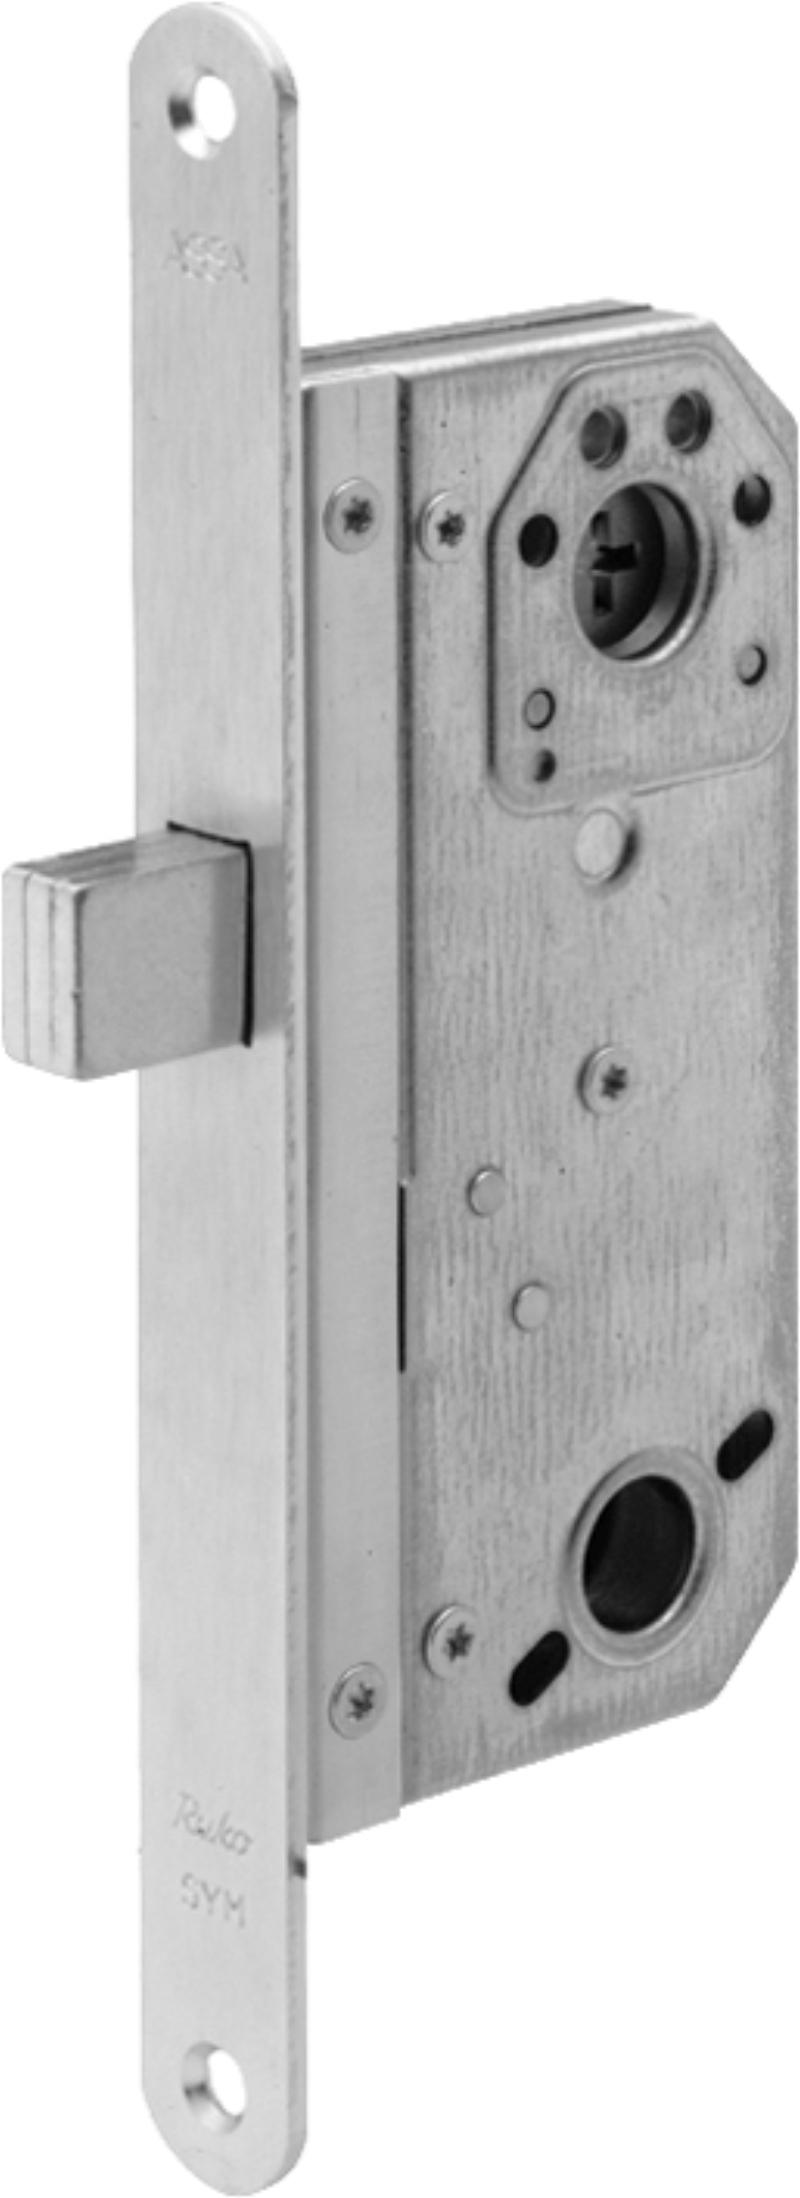 Assa lock box 9788/70 w/tin (520428)